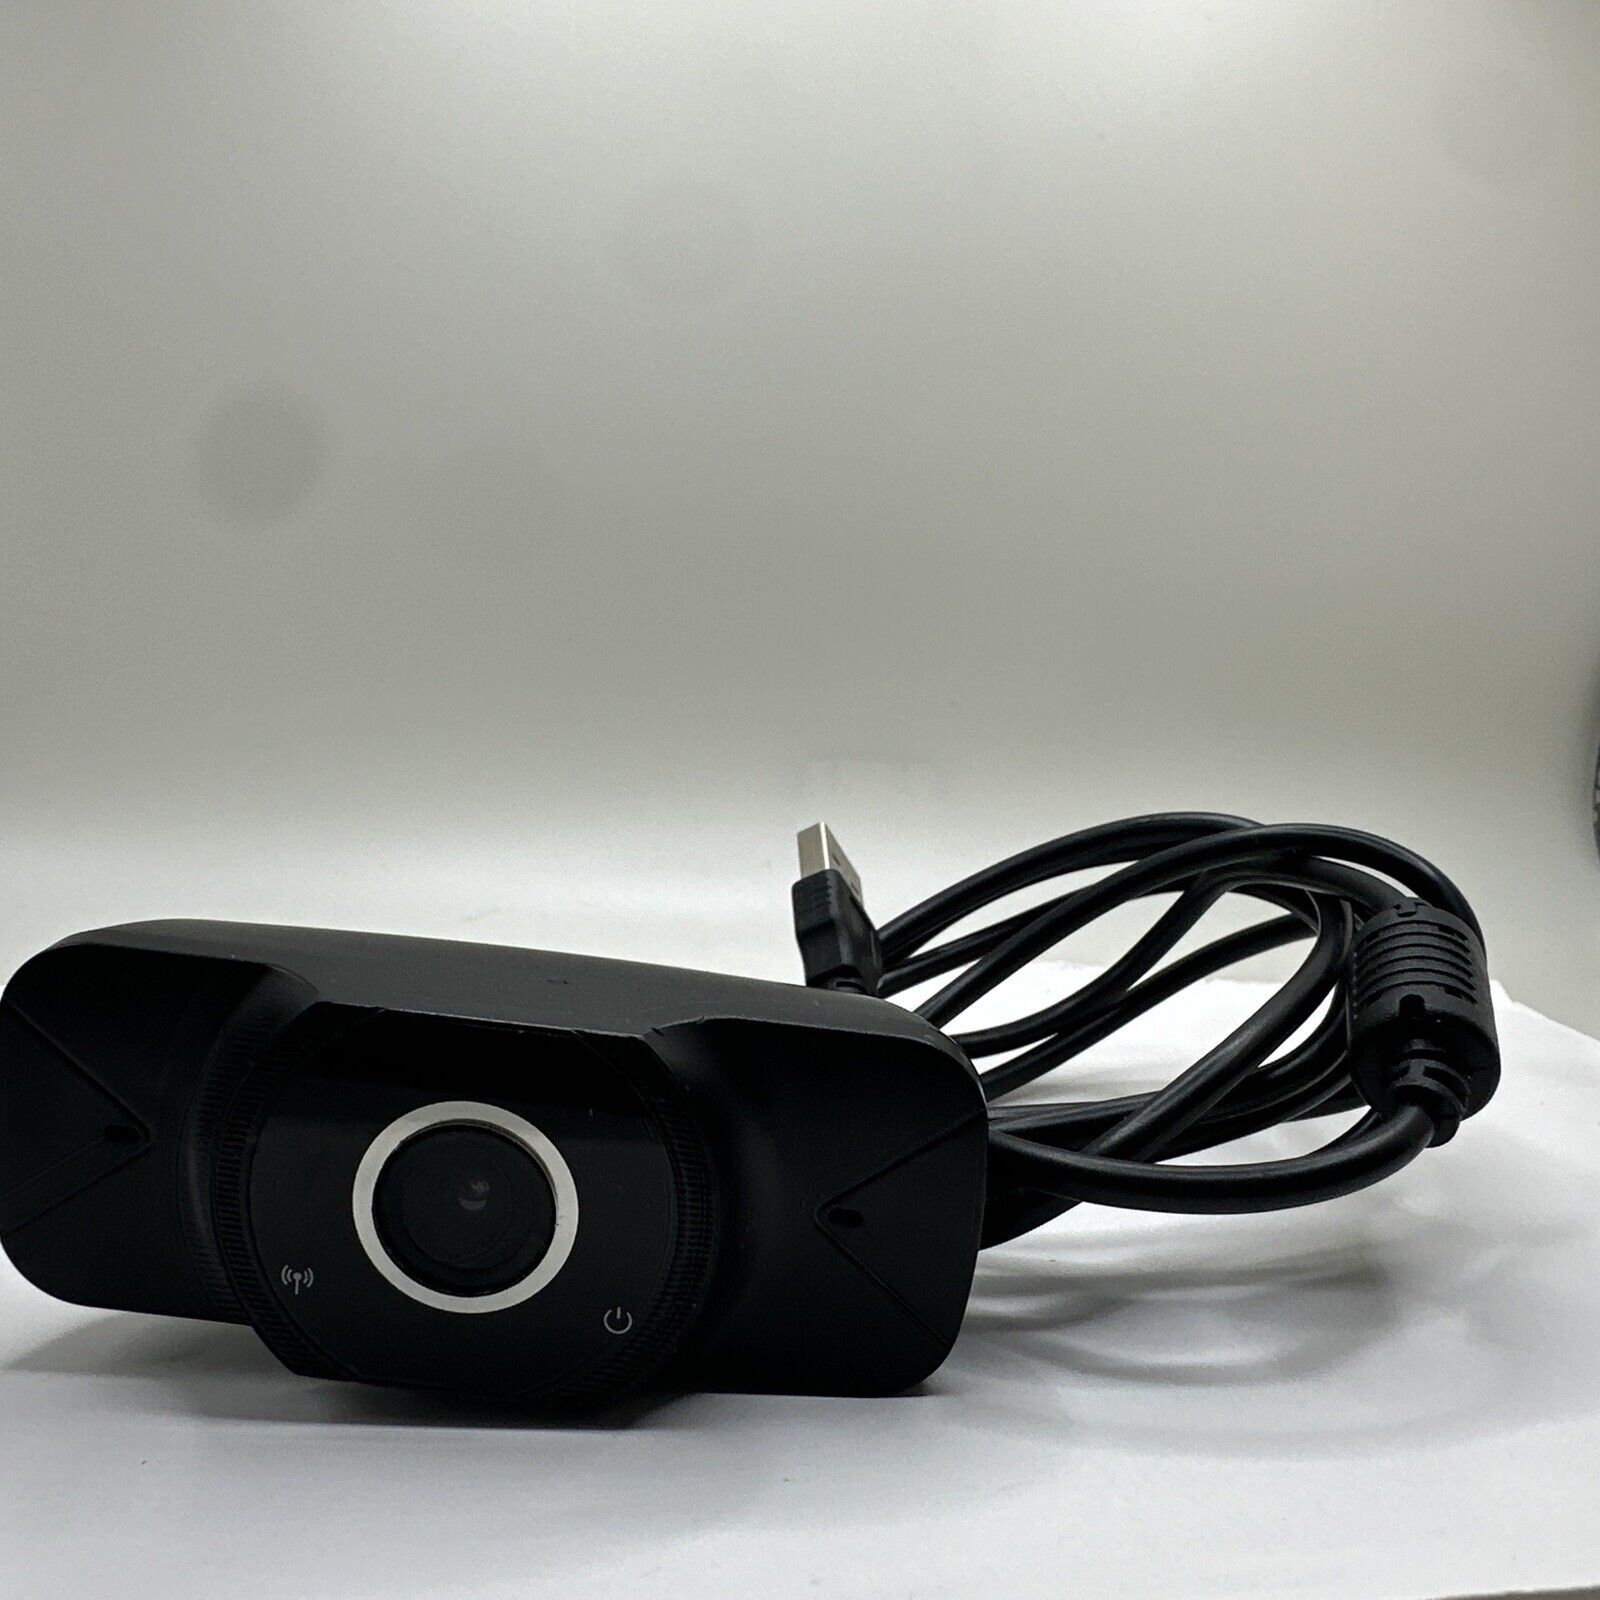 Potenza VS15 Auto-Focus 2MP Full HD (1920x1080) Webcam, Usb 2.0